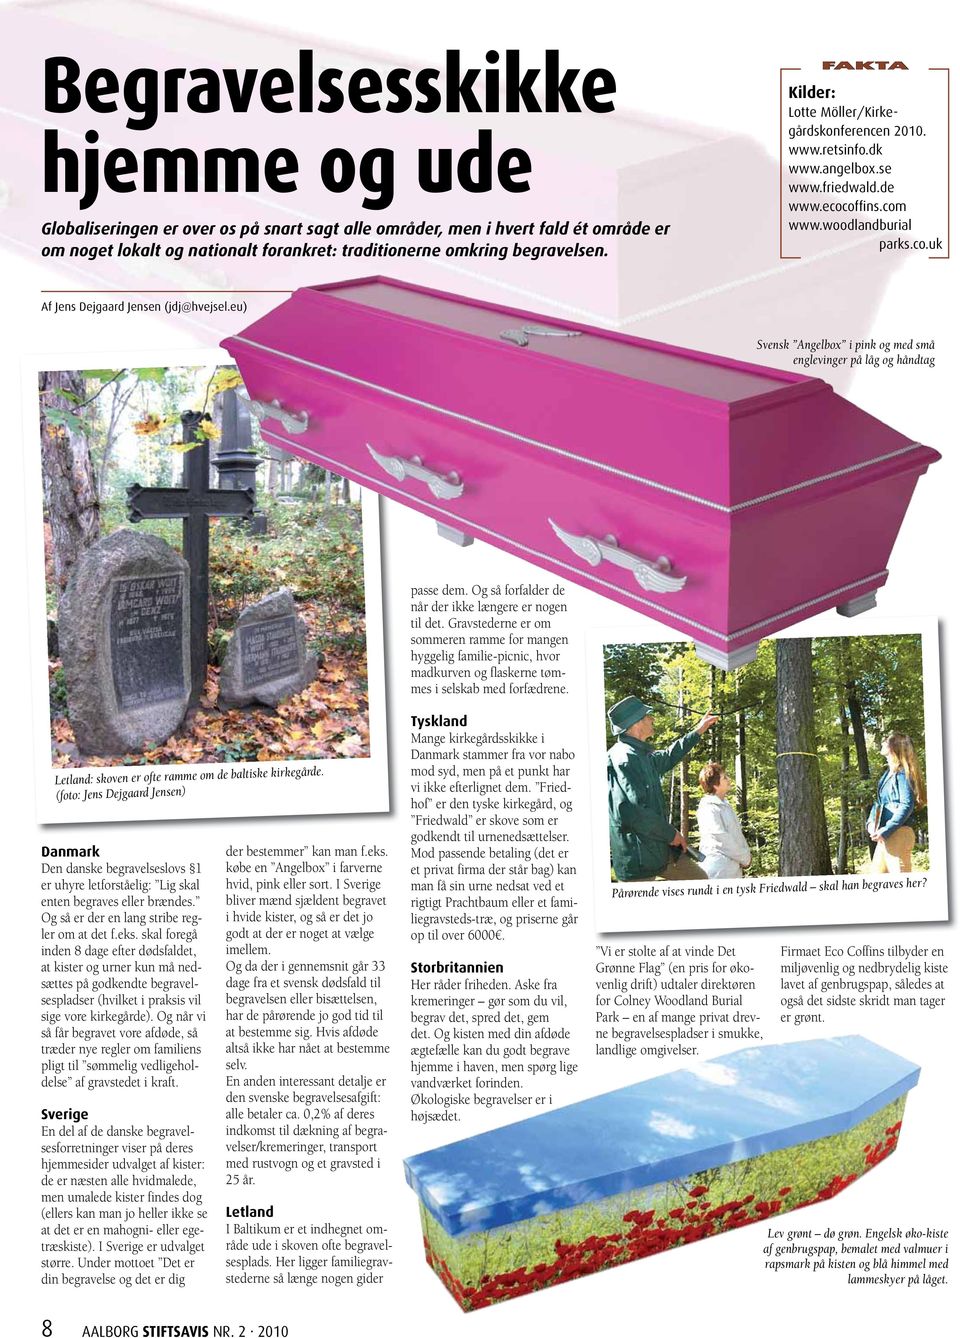 eu) Svensk Angelbox i pink og med små englevinger på låg og håndtag Letland: skoven er ofte ramme om de baltiske kirkegårde.